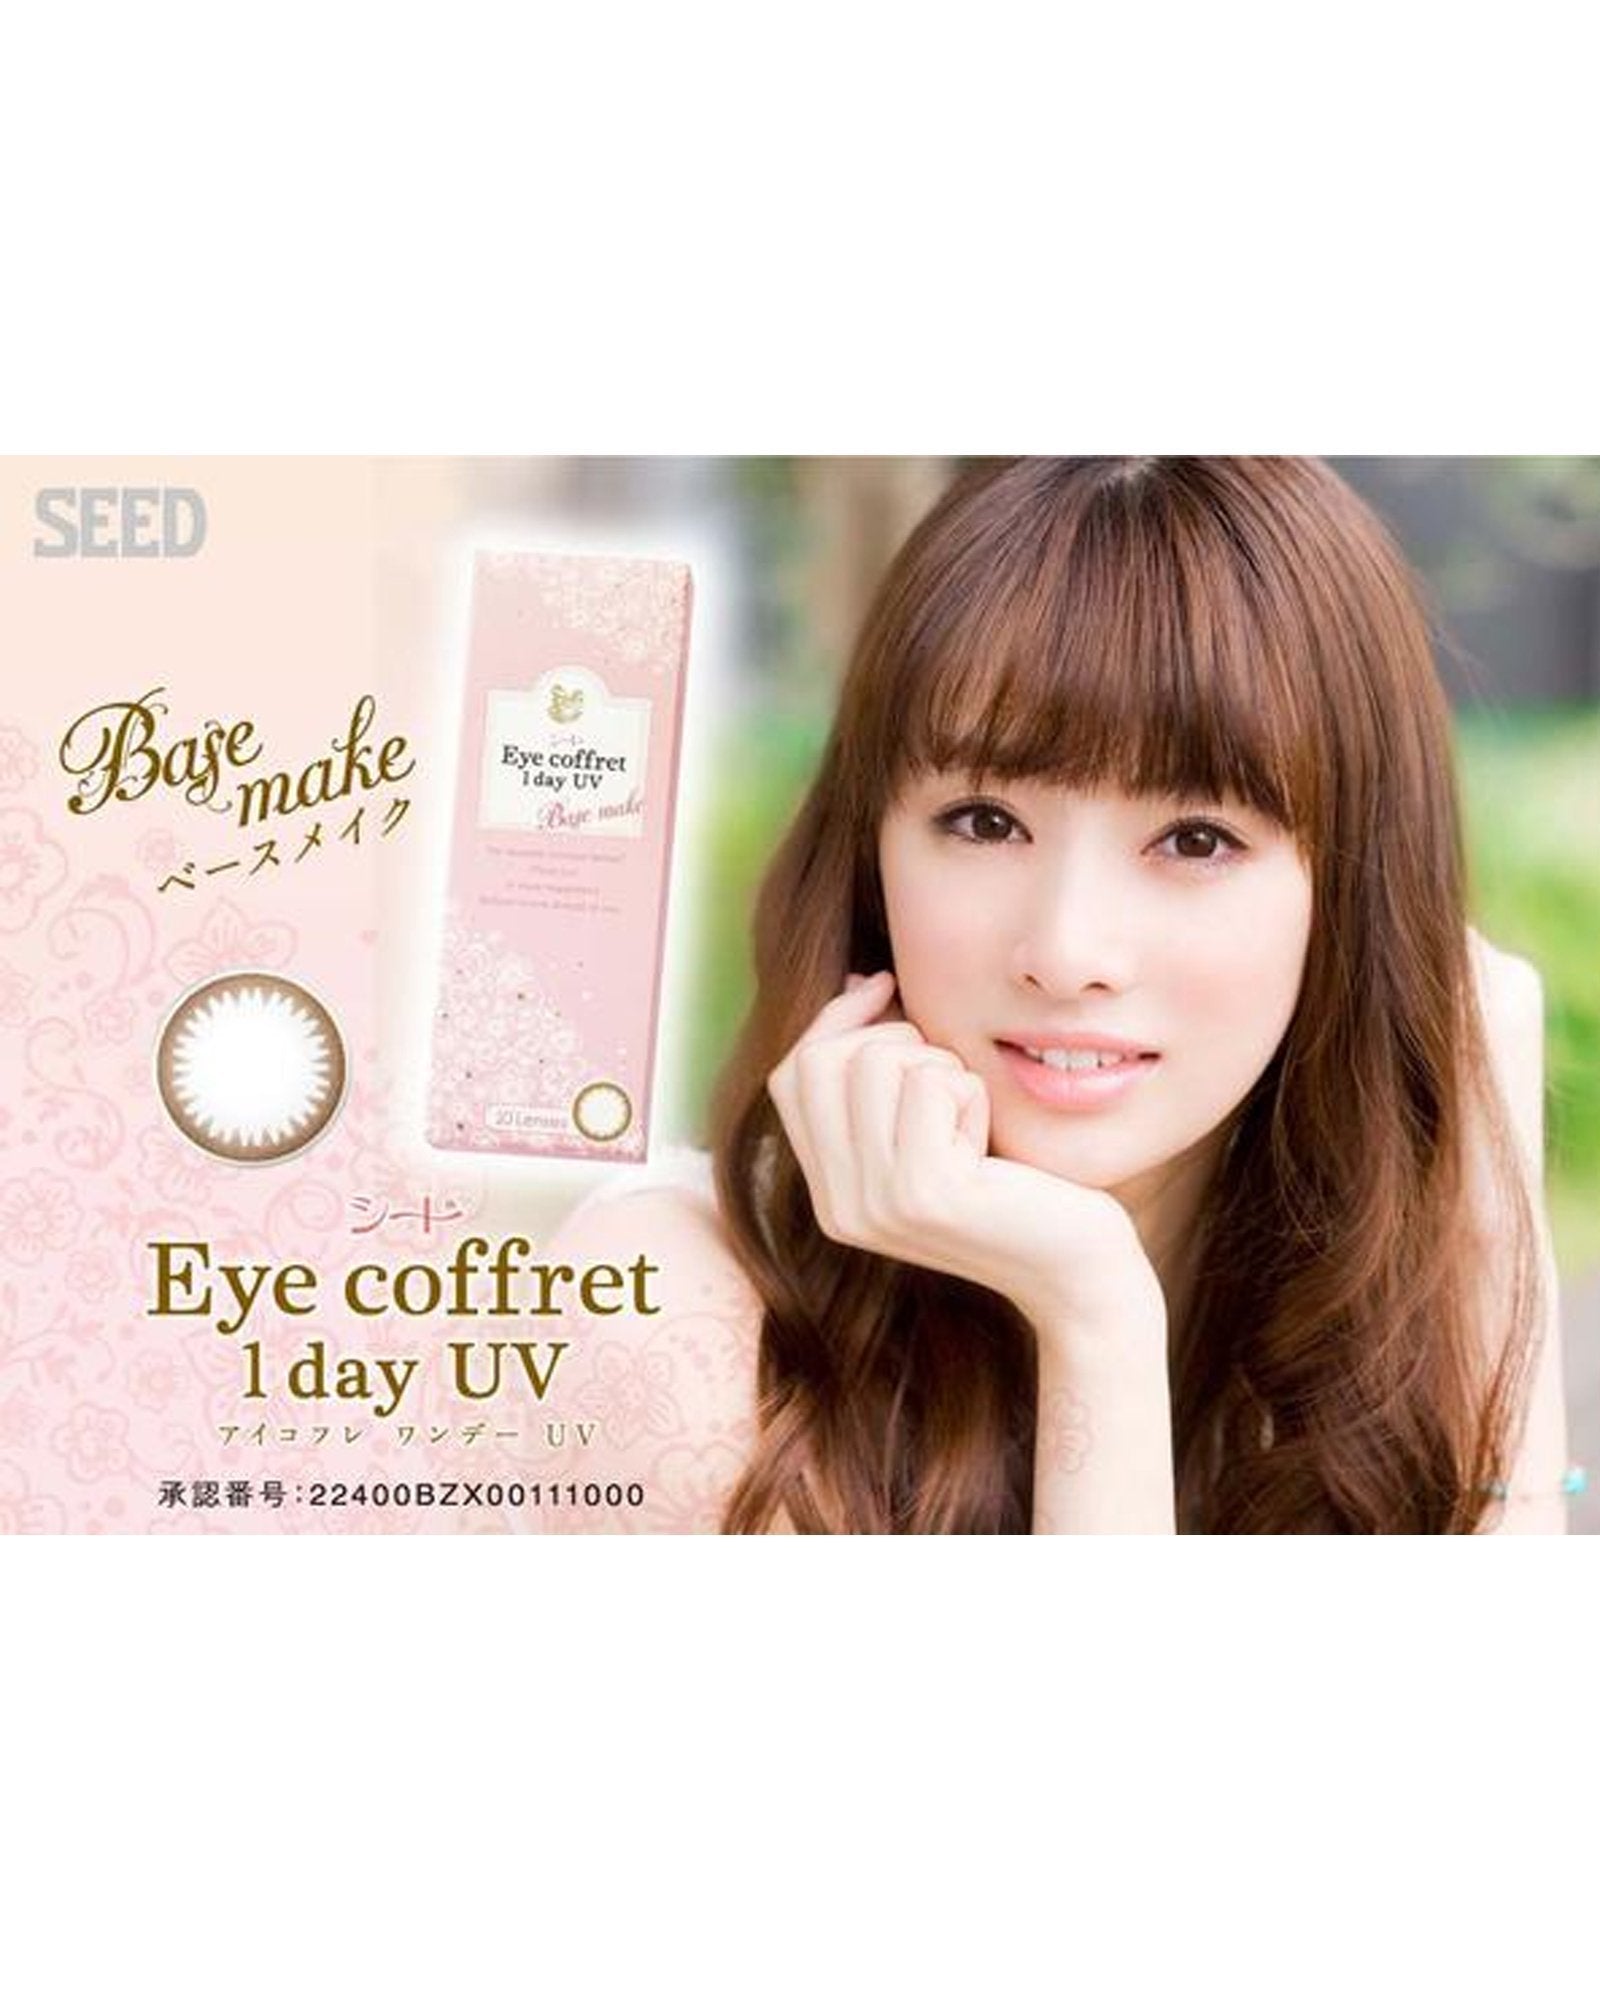 Eye Coffret 1 Day UV (30 Lenses pack) - SEED - lenscottage